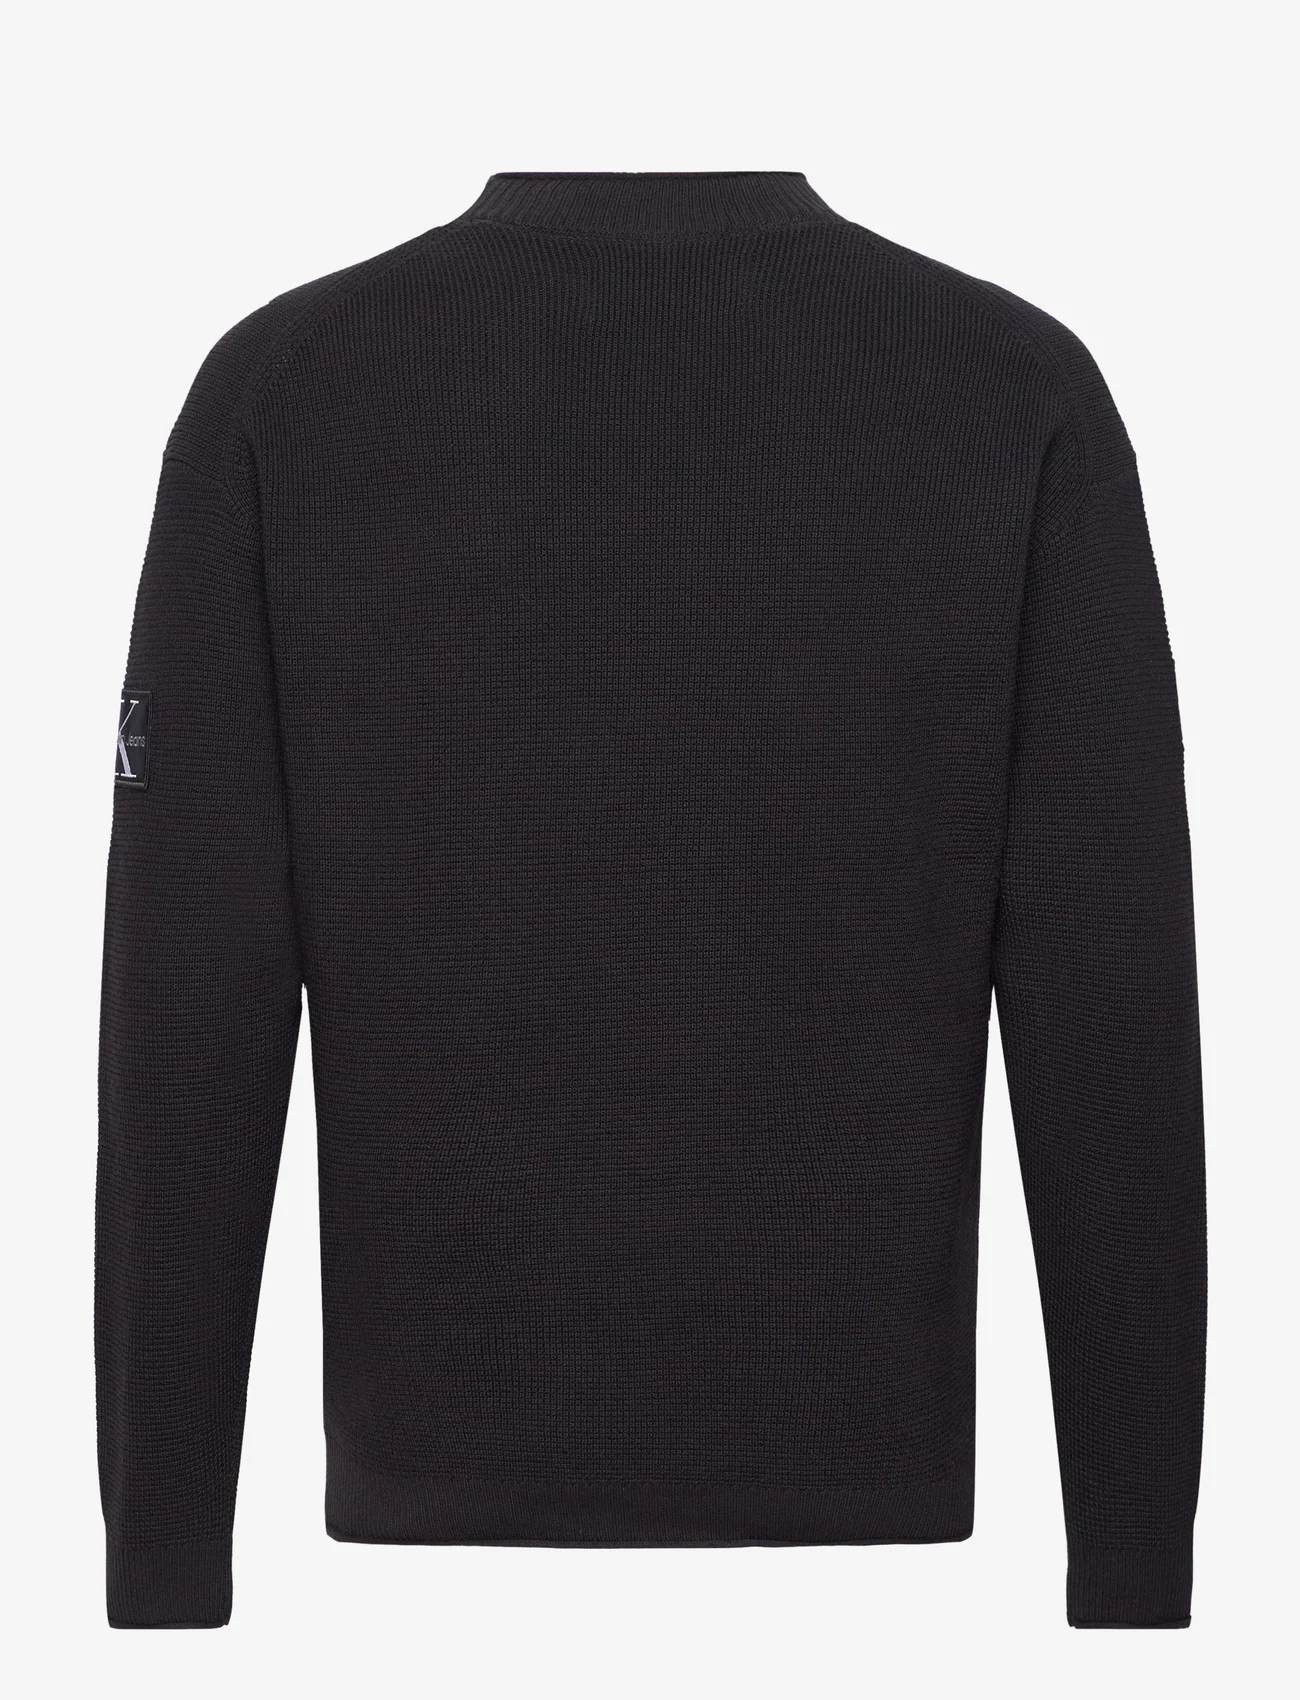 Calvin Klein Jeans - BADGE RELAXED SWEATER - pyöreäaukkoiset - ck black - 1